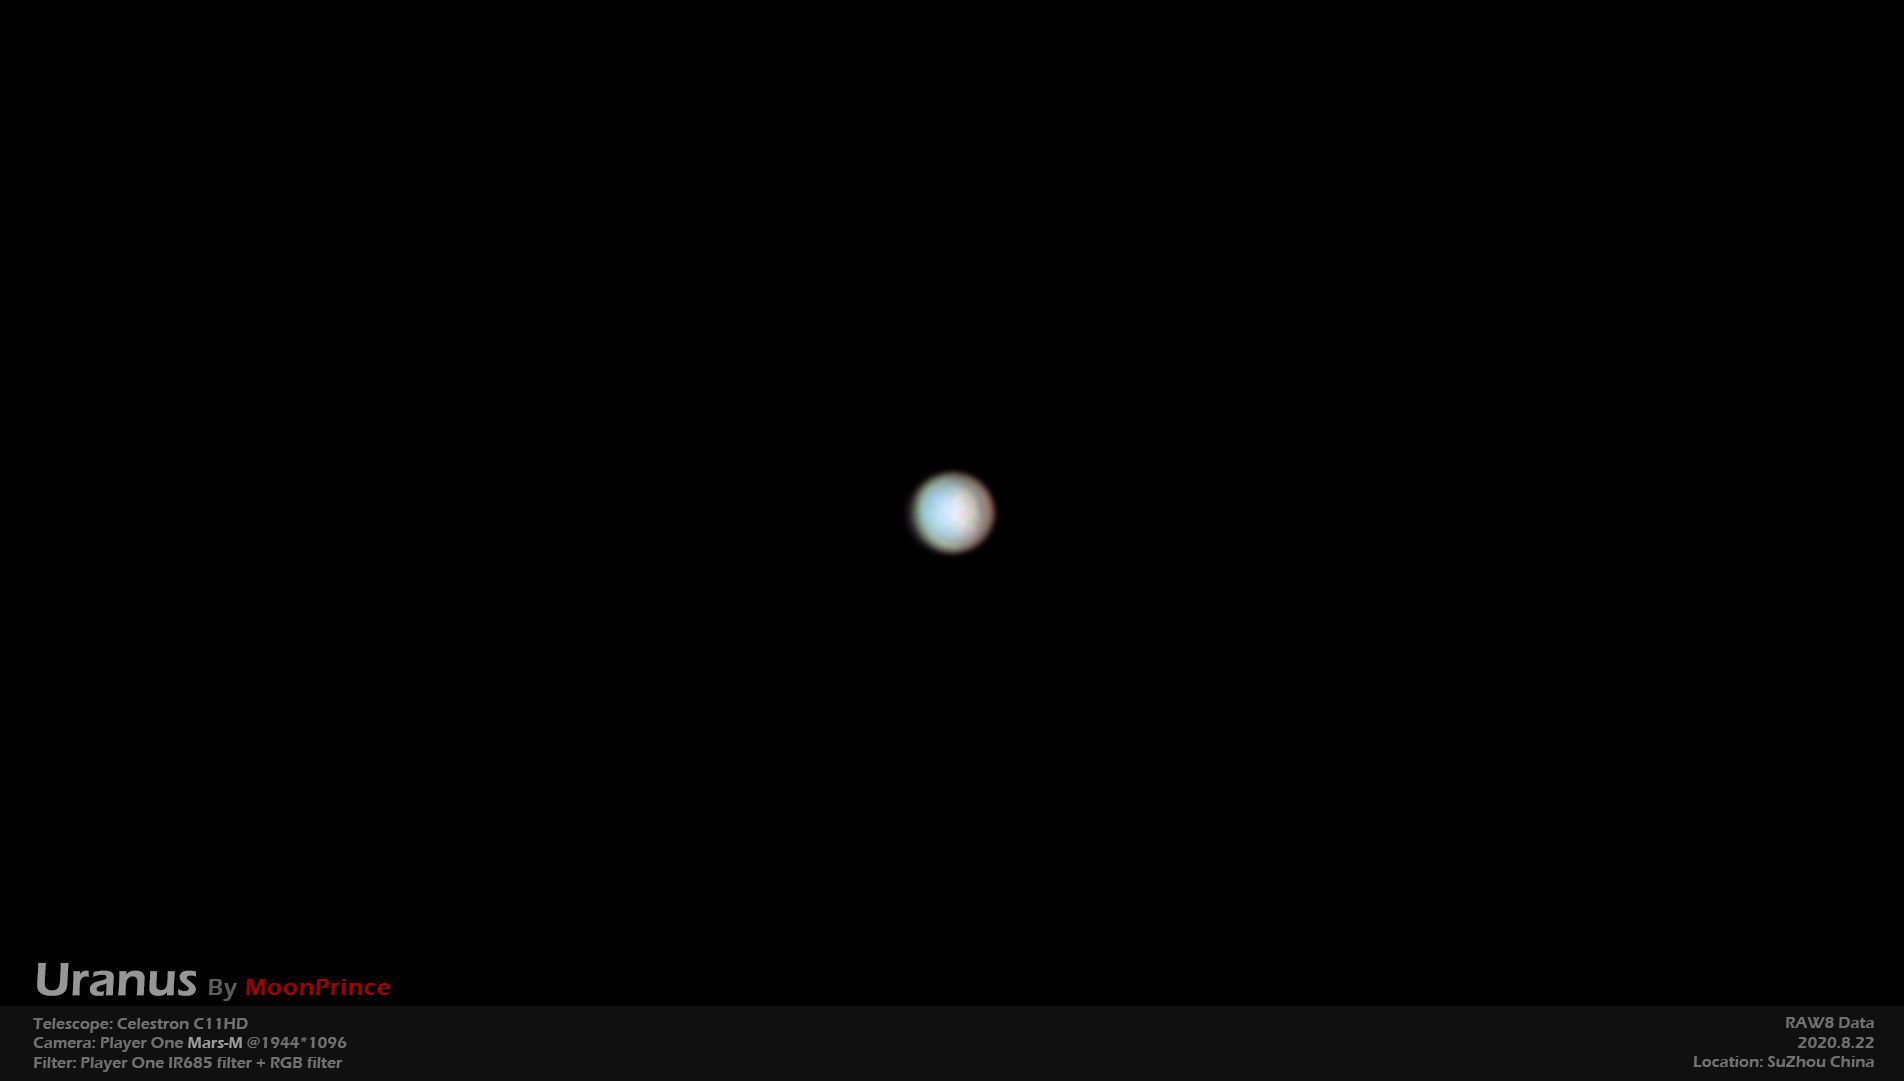 Uranus-with-IR685-filter.jpg (1904×1081)